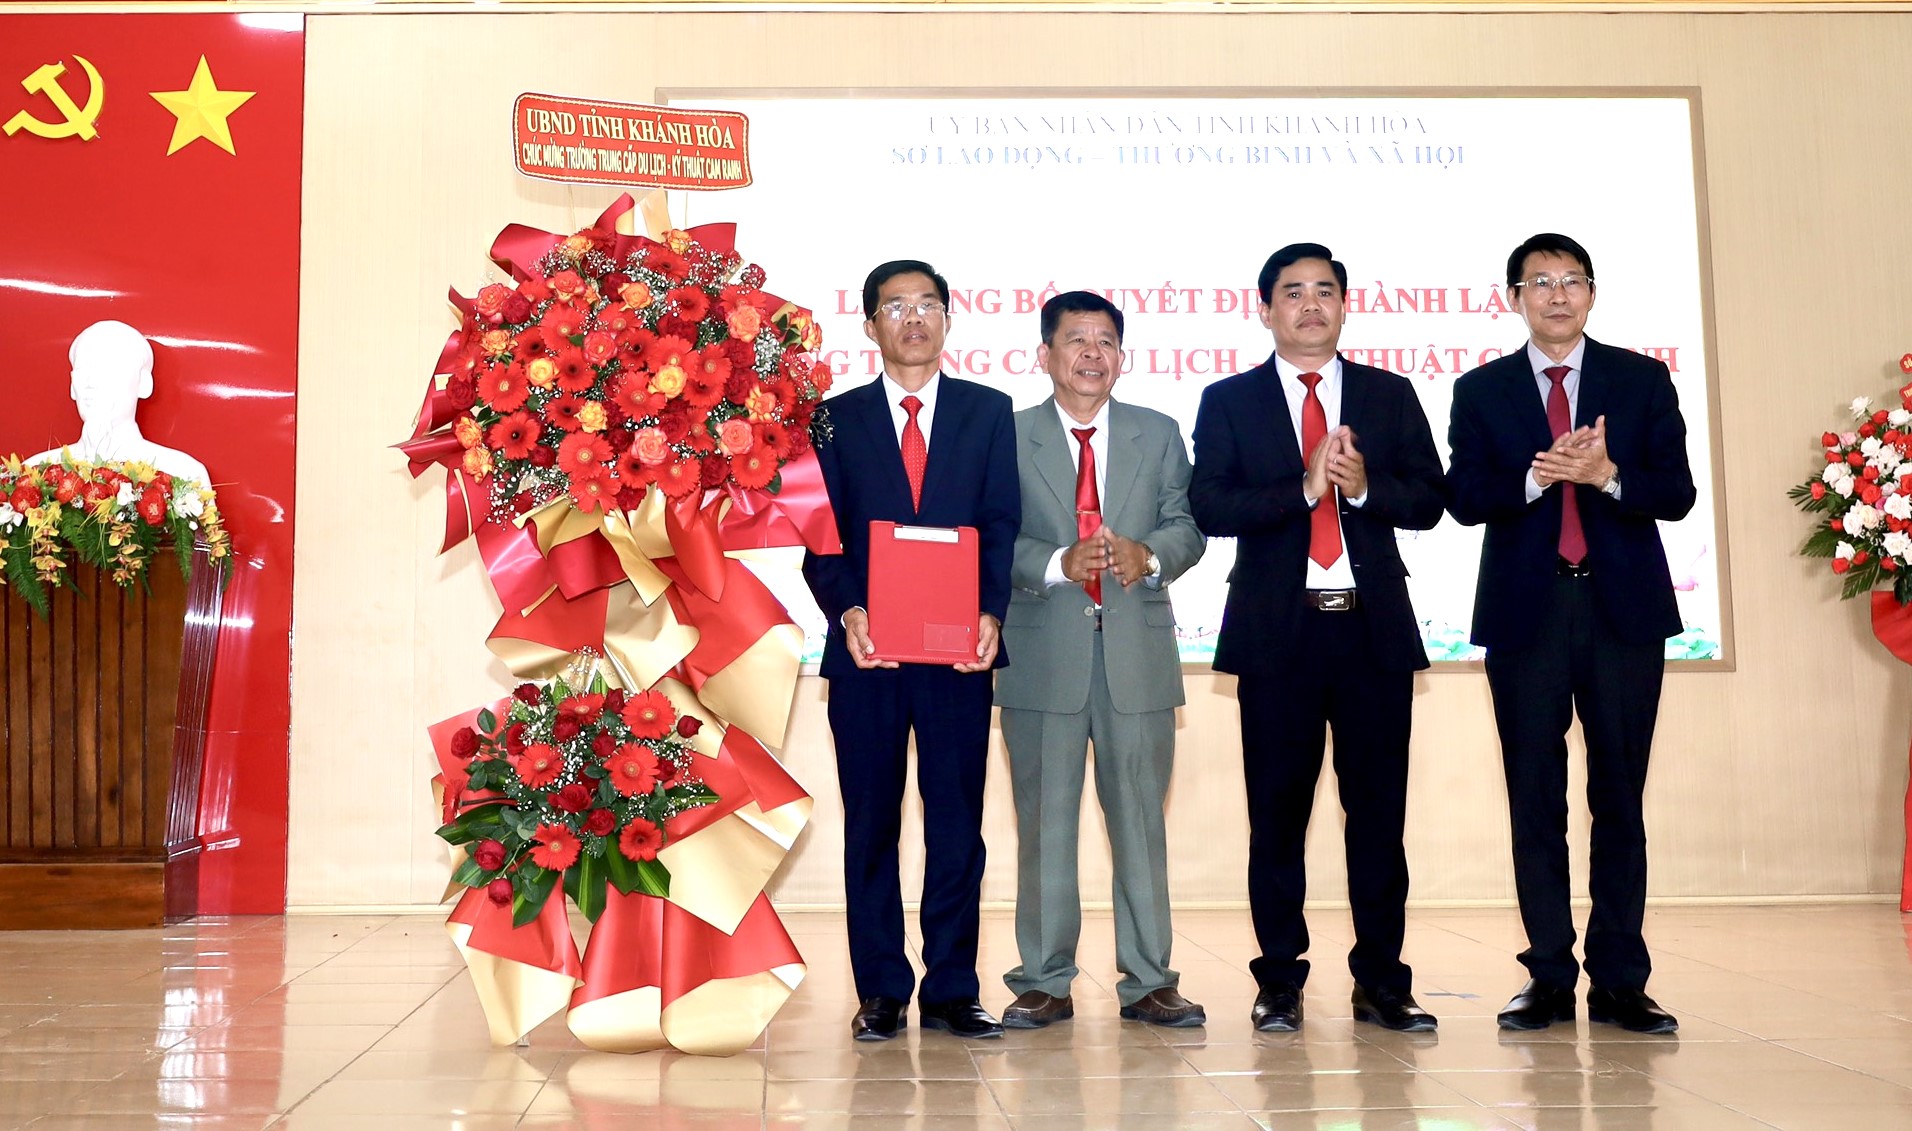 Ông Đinh Văn Thiệu trao quyết định thành lập Trường Trung cấp Du lịch - Kỹ thuật Cam Ranh.